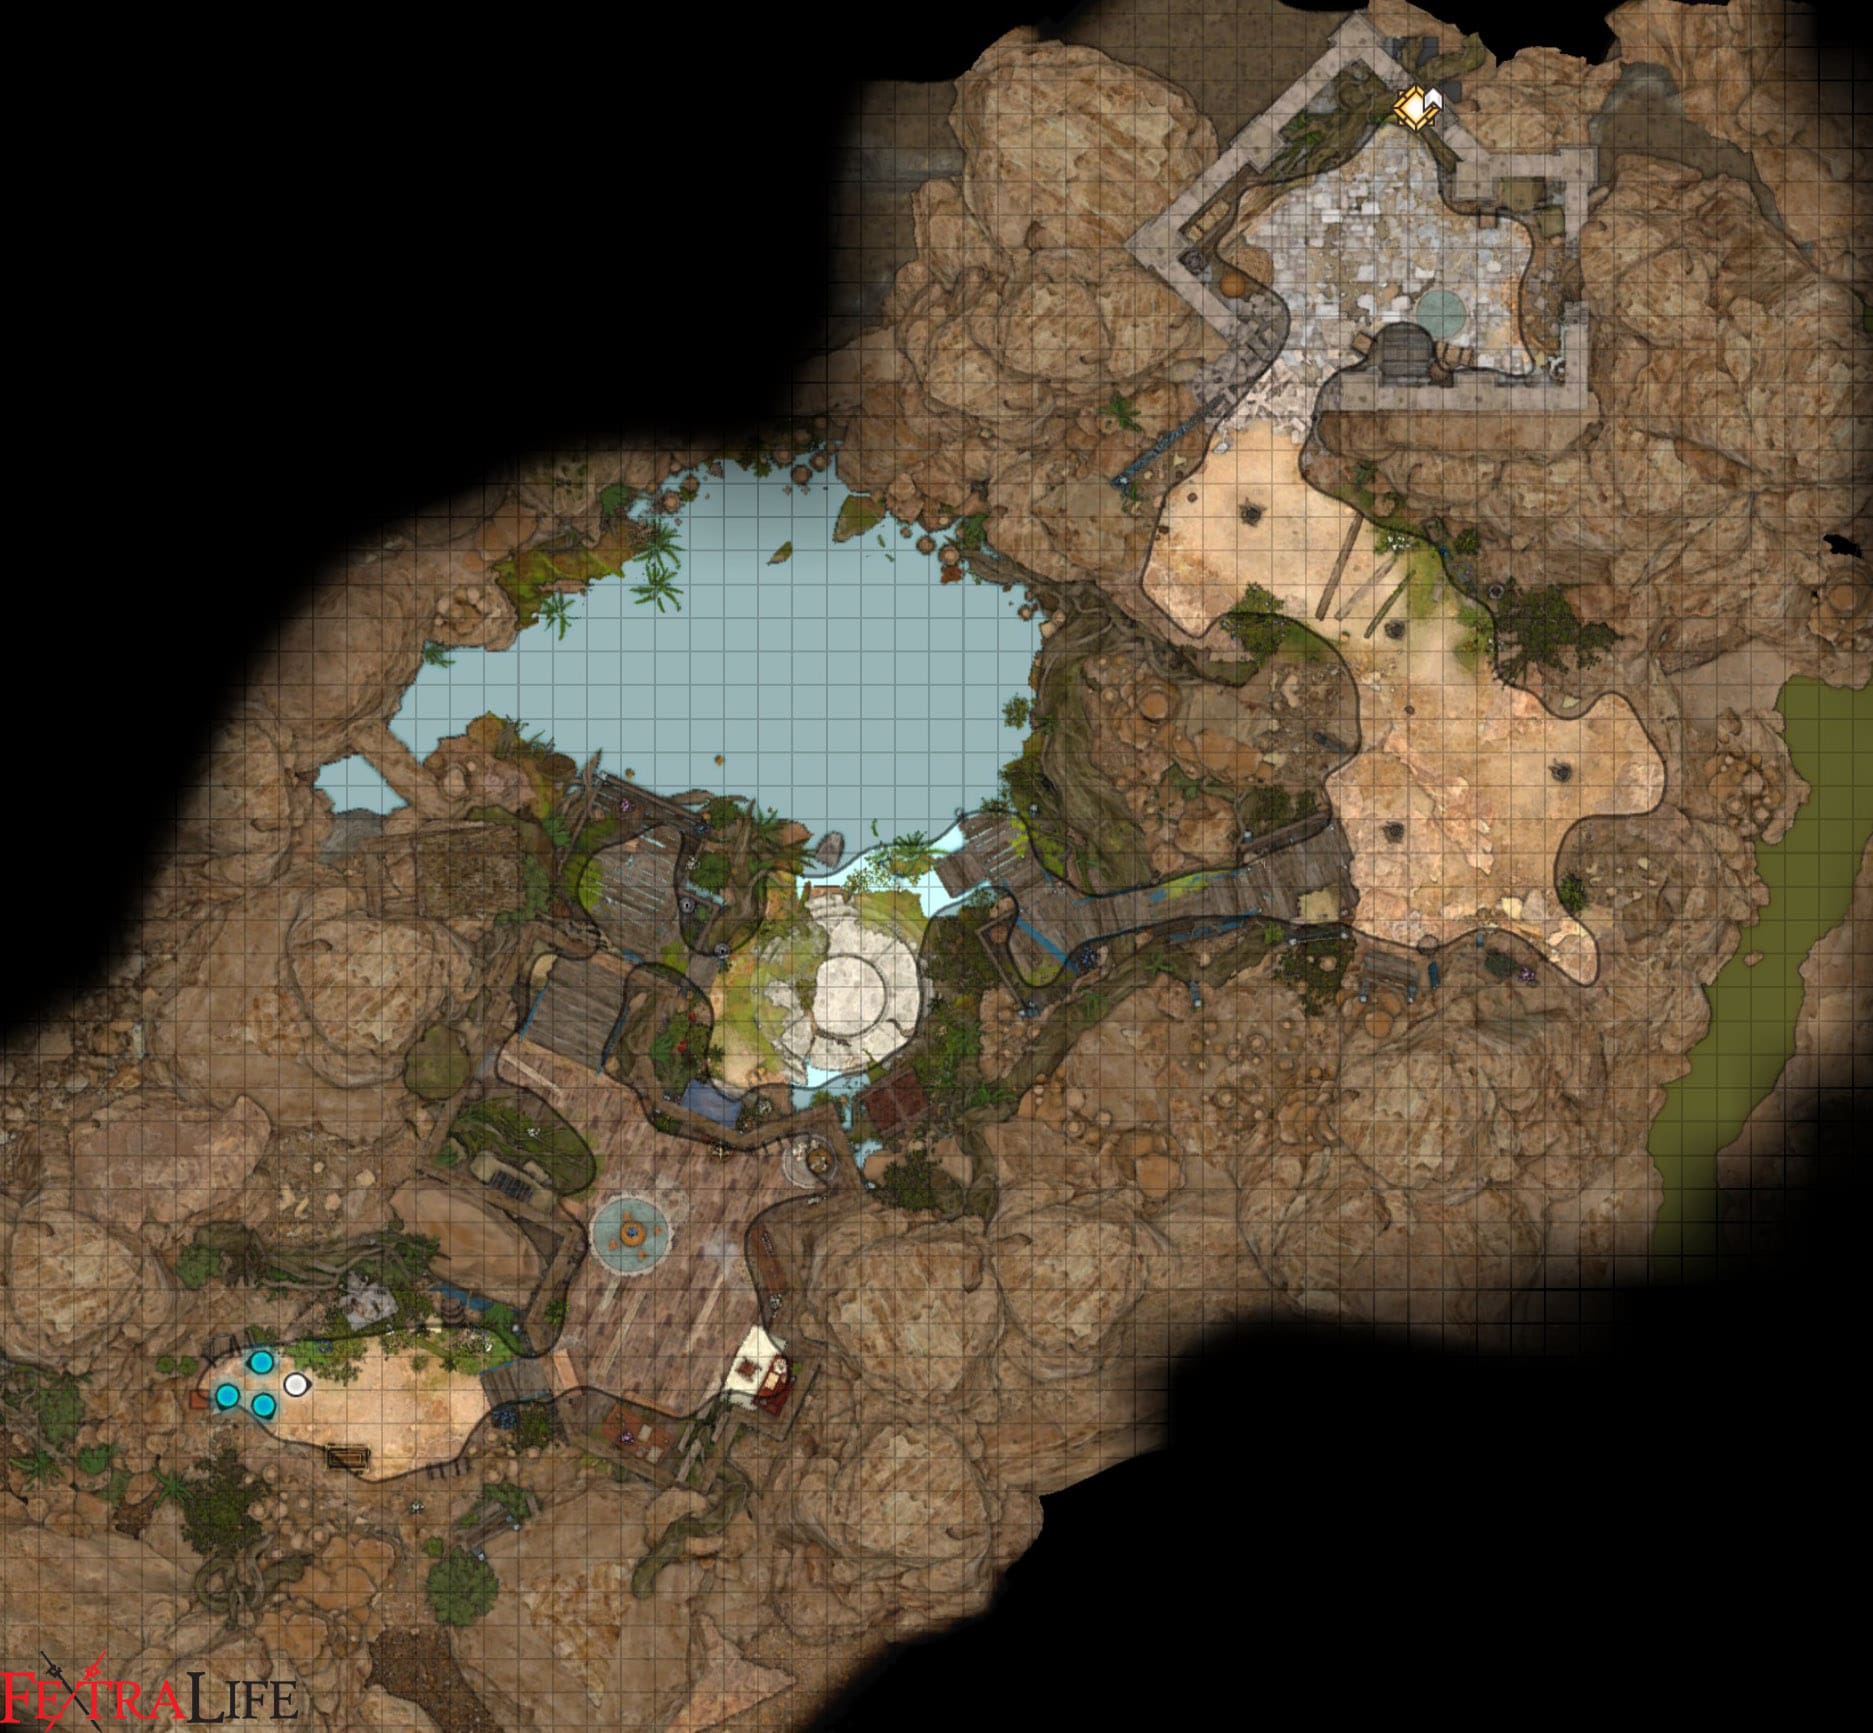 jaheira basement hideout map final release bg3 wiki guide min